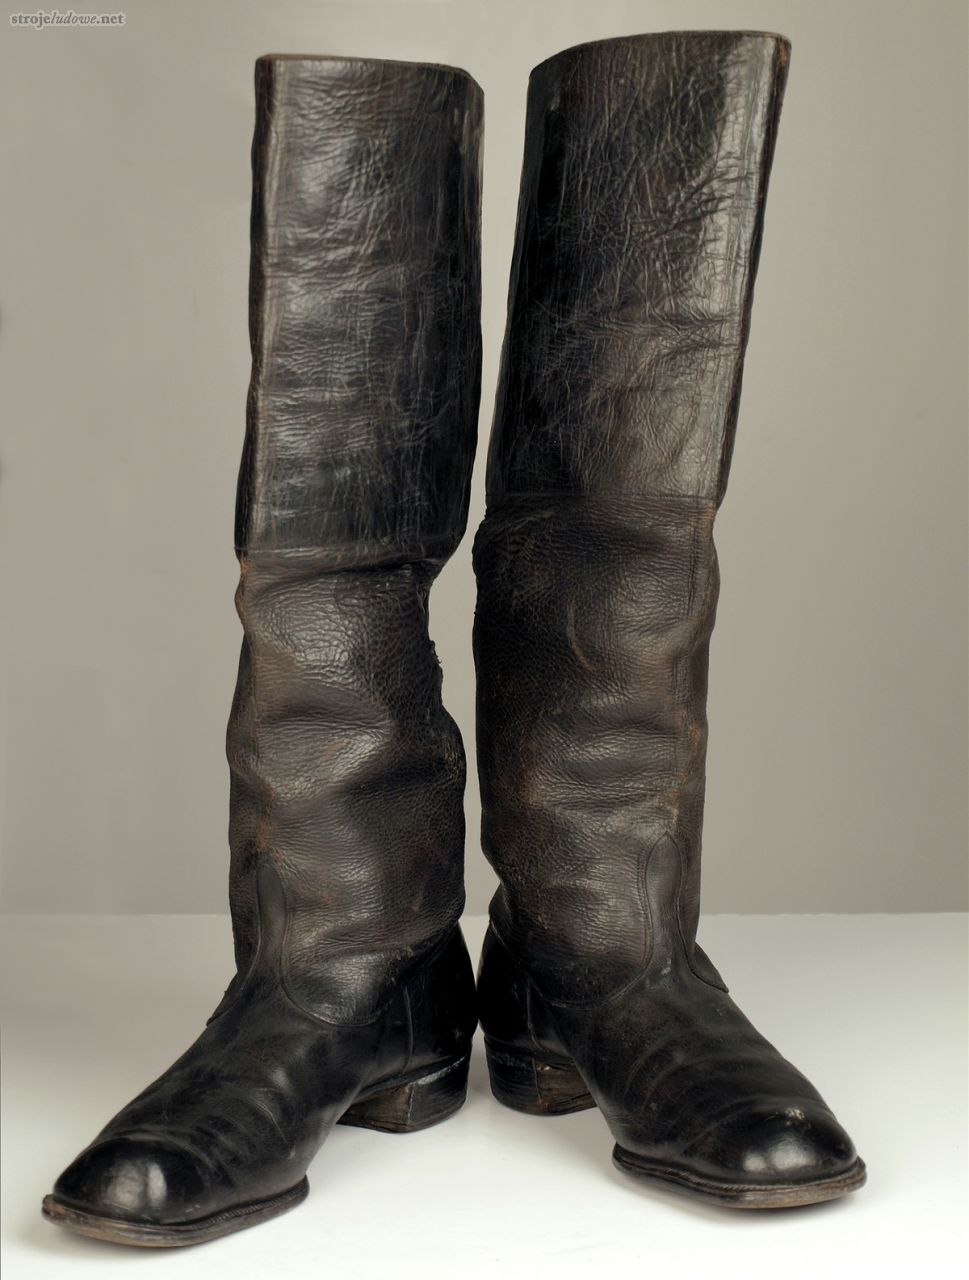 Buty męskie. Ze zbiorów Państwowego Muzeum Etnograficznego w Warszawie, fot. K.Wodecka

Mężczyźni nosili buty z cholewami zwane <i>polokami</i>. Szyto je z czarnej, glansowanej skóry. Miały długą cholewę, w części górnej usztywnioną, dzięki czemu dolna, miękka część układała się w rodzaj harmonijki.